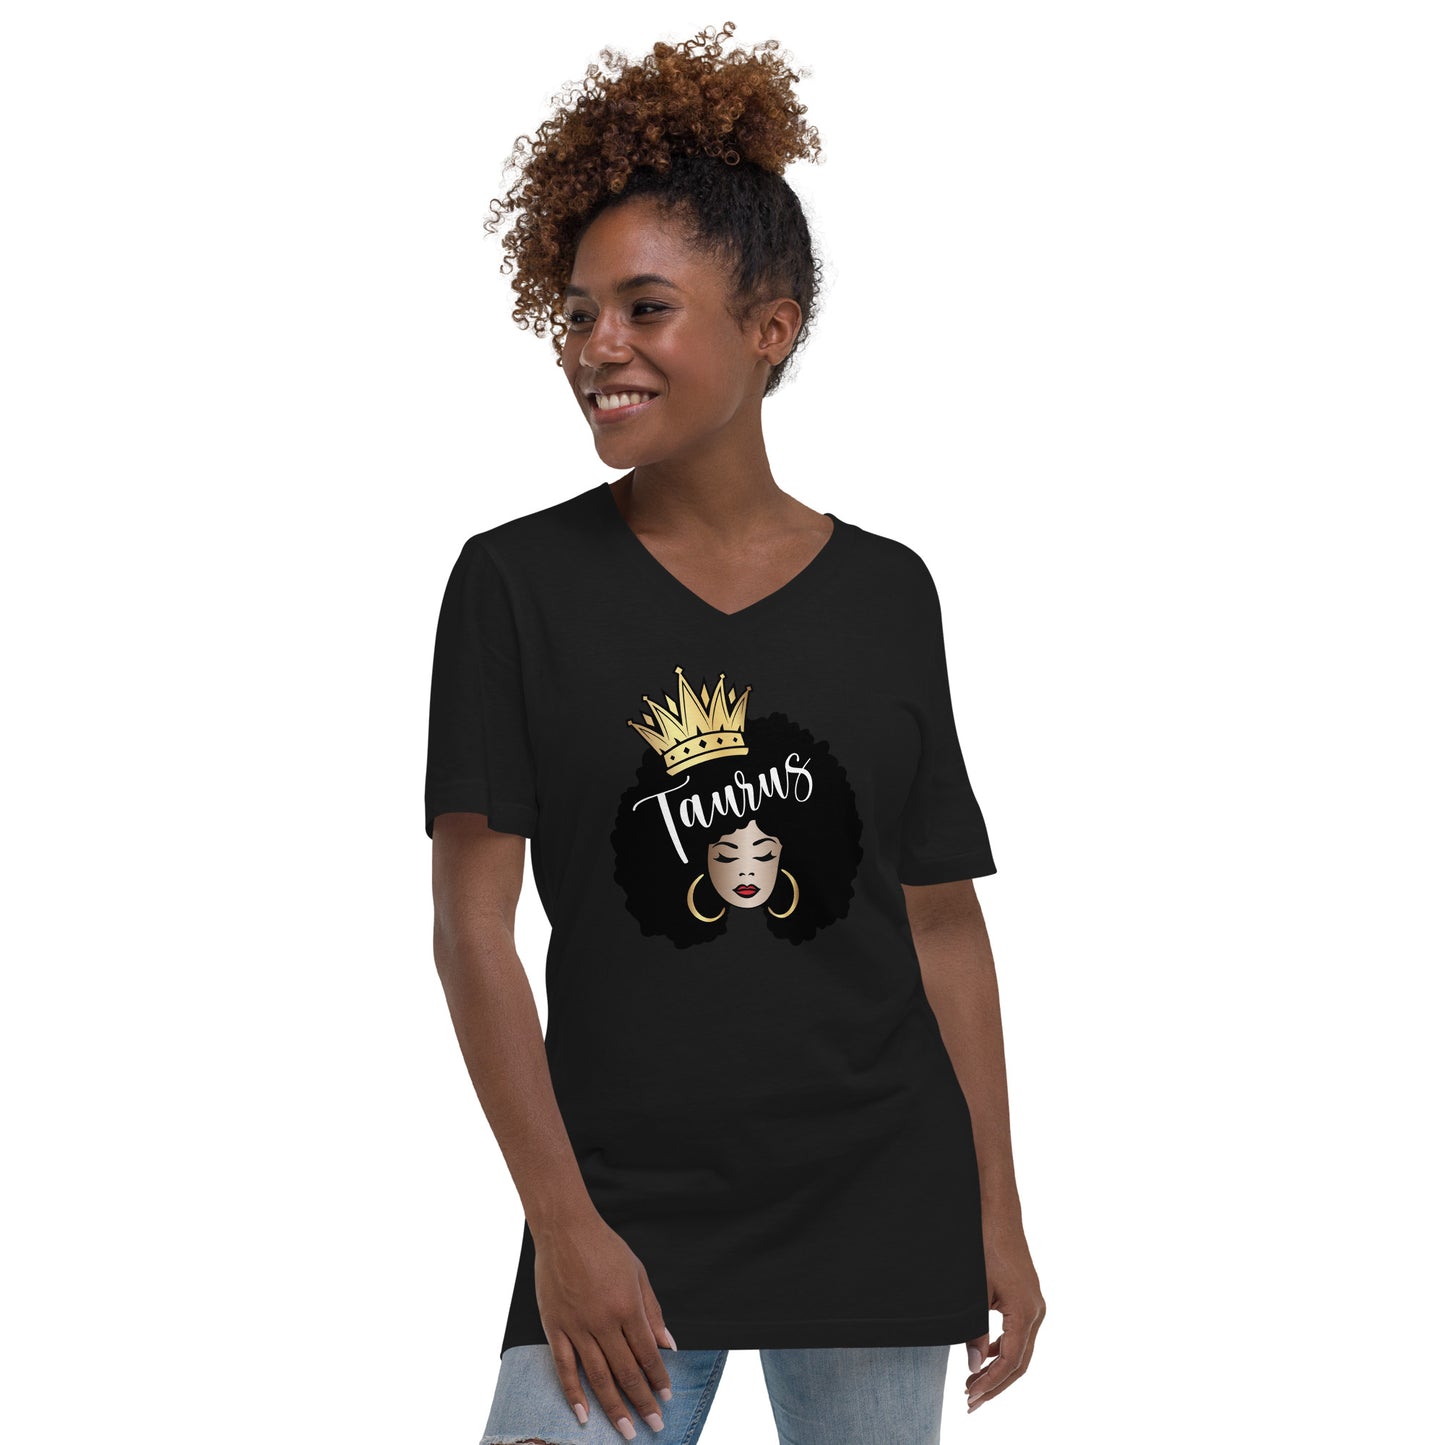 Women's Short Sleeve V-Neck T-Shirt - Taurus Afro Queen